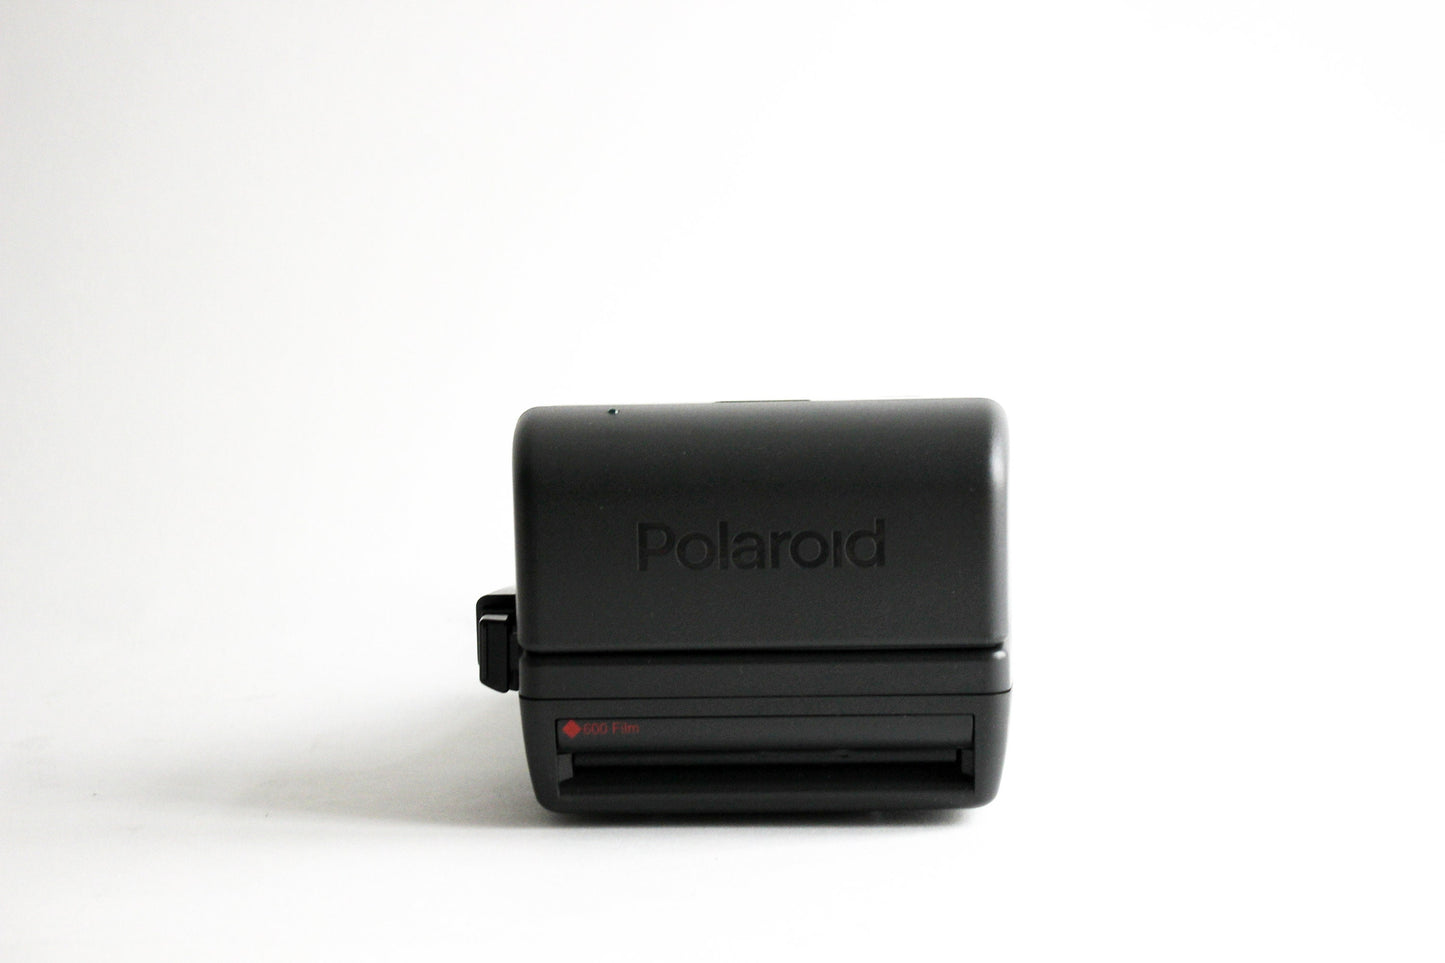 Polaroid 90s 636 Close Up / One step Close Up -  Includes original box